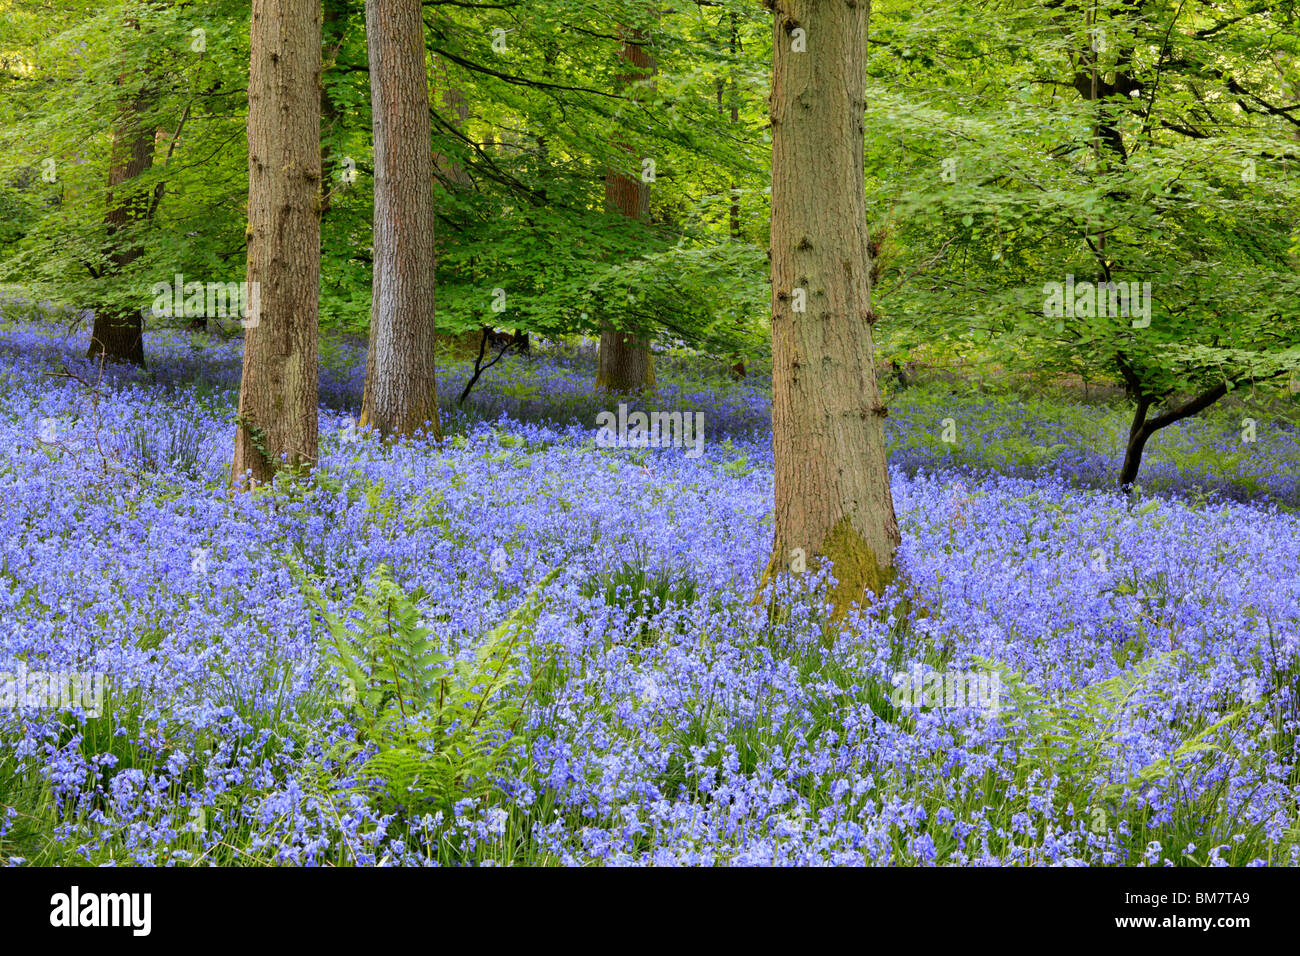 Alfombra clásica de inglés las campánulas azules en el camino entre Soudley y Blakeney en el Bosque de Dean, Gloucestershire, Reino Unido Foto de stock